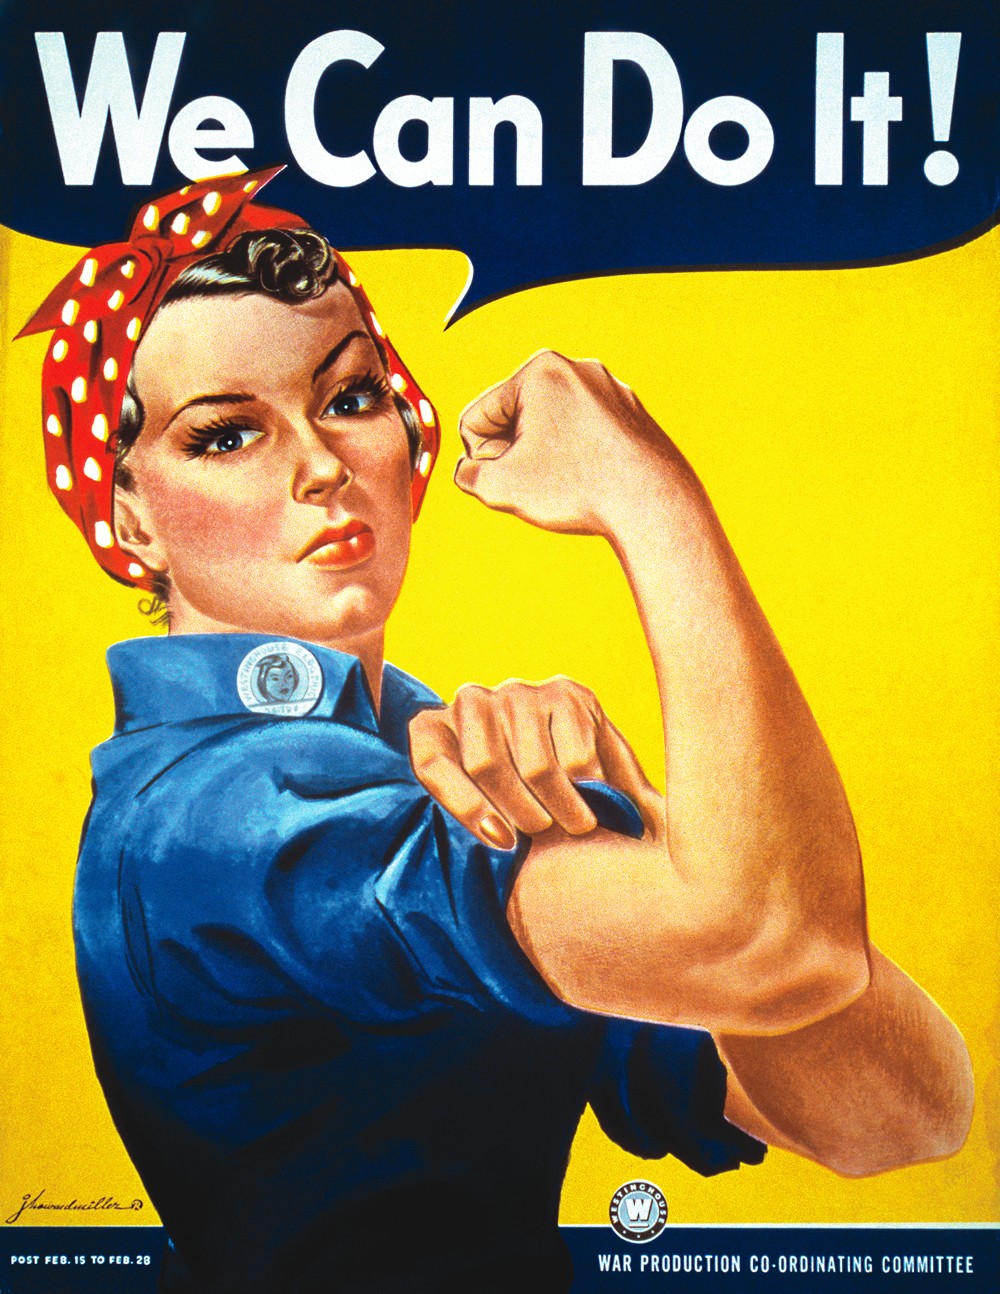 Американский пропагандистский плакат эпохи Второй мировой, созданный Д.Г. Миллером, заново открытый в начале 1980-х годов и ставший одним из символов в феминизме и других политических движениях 